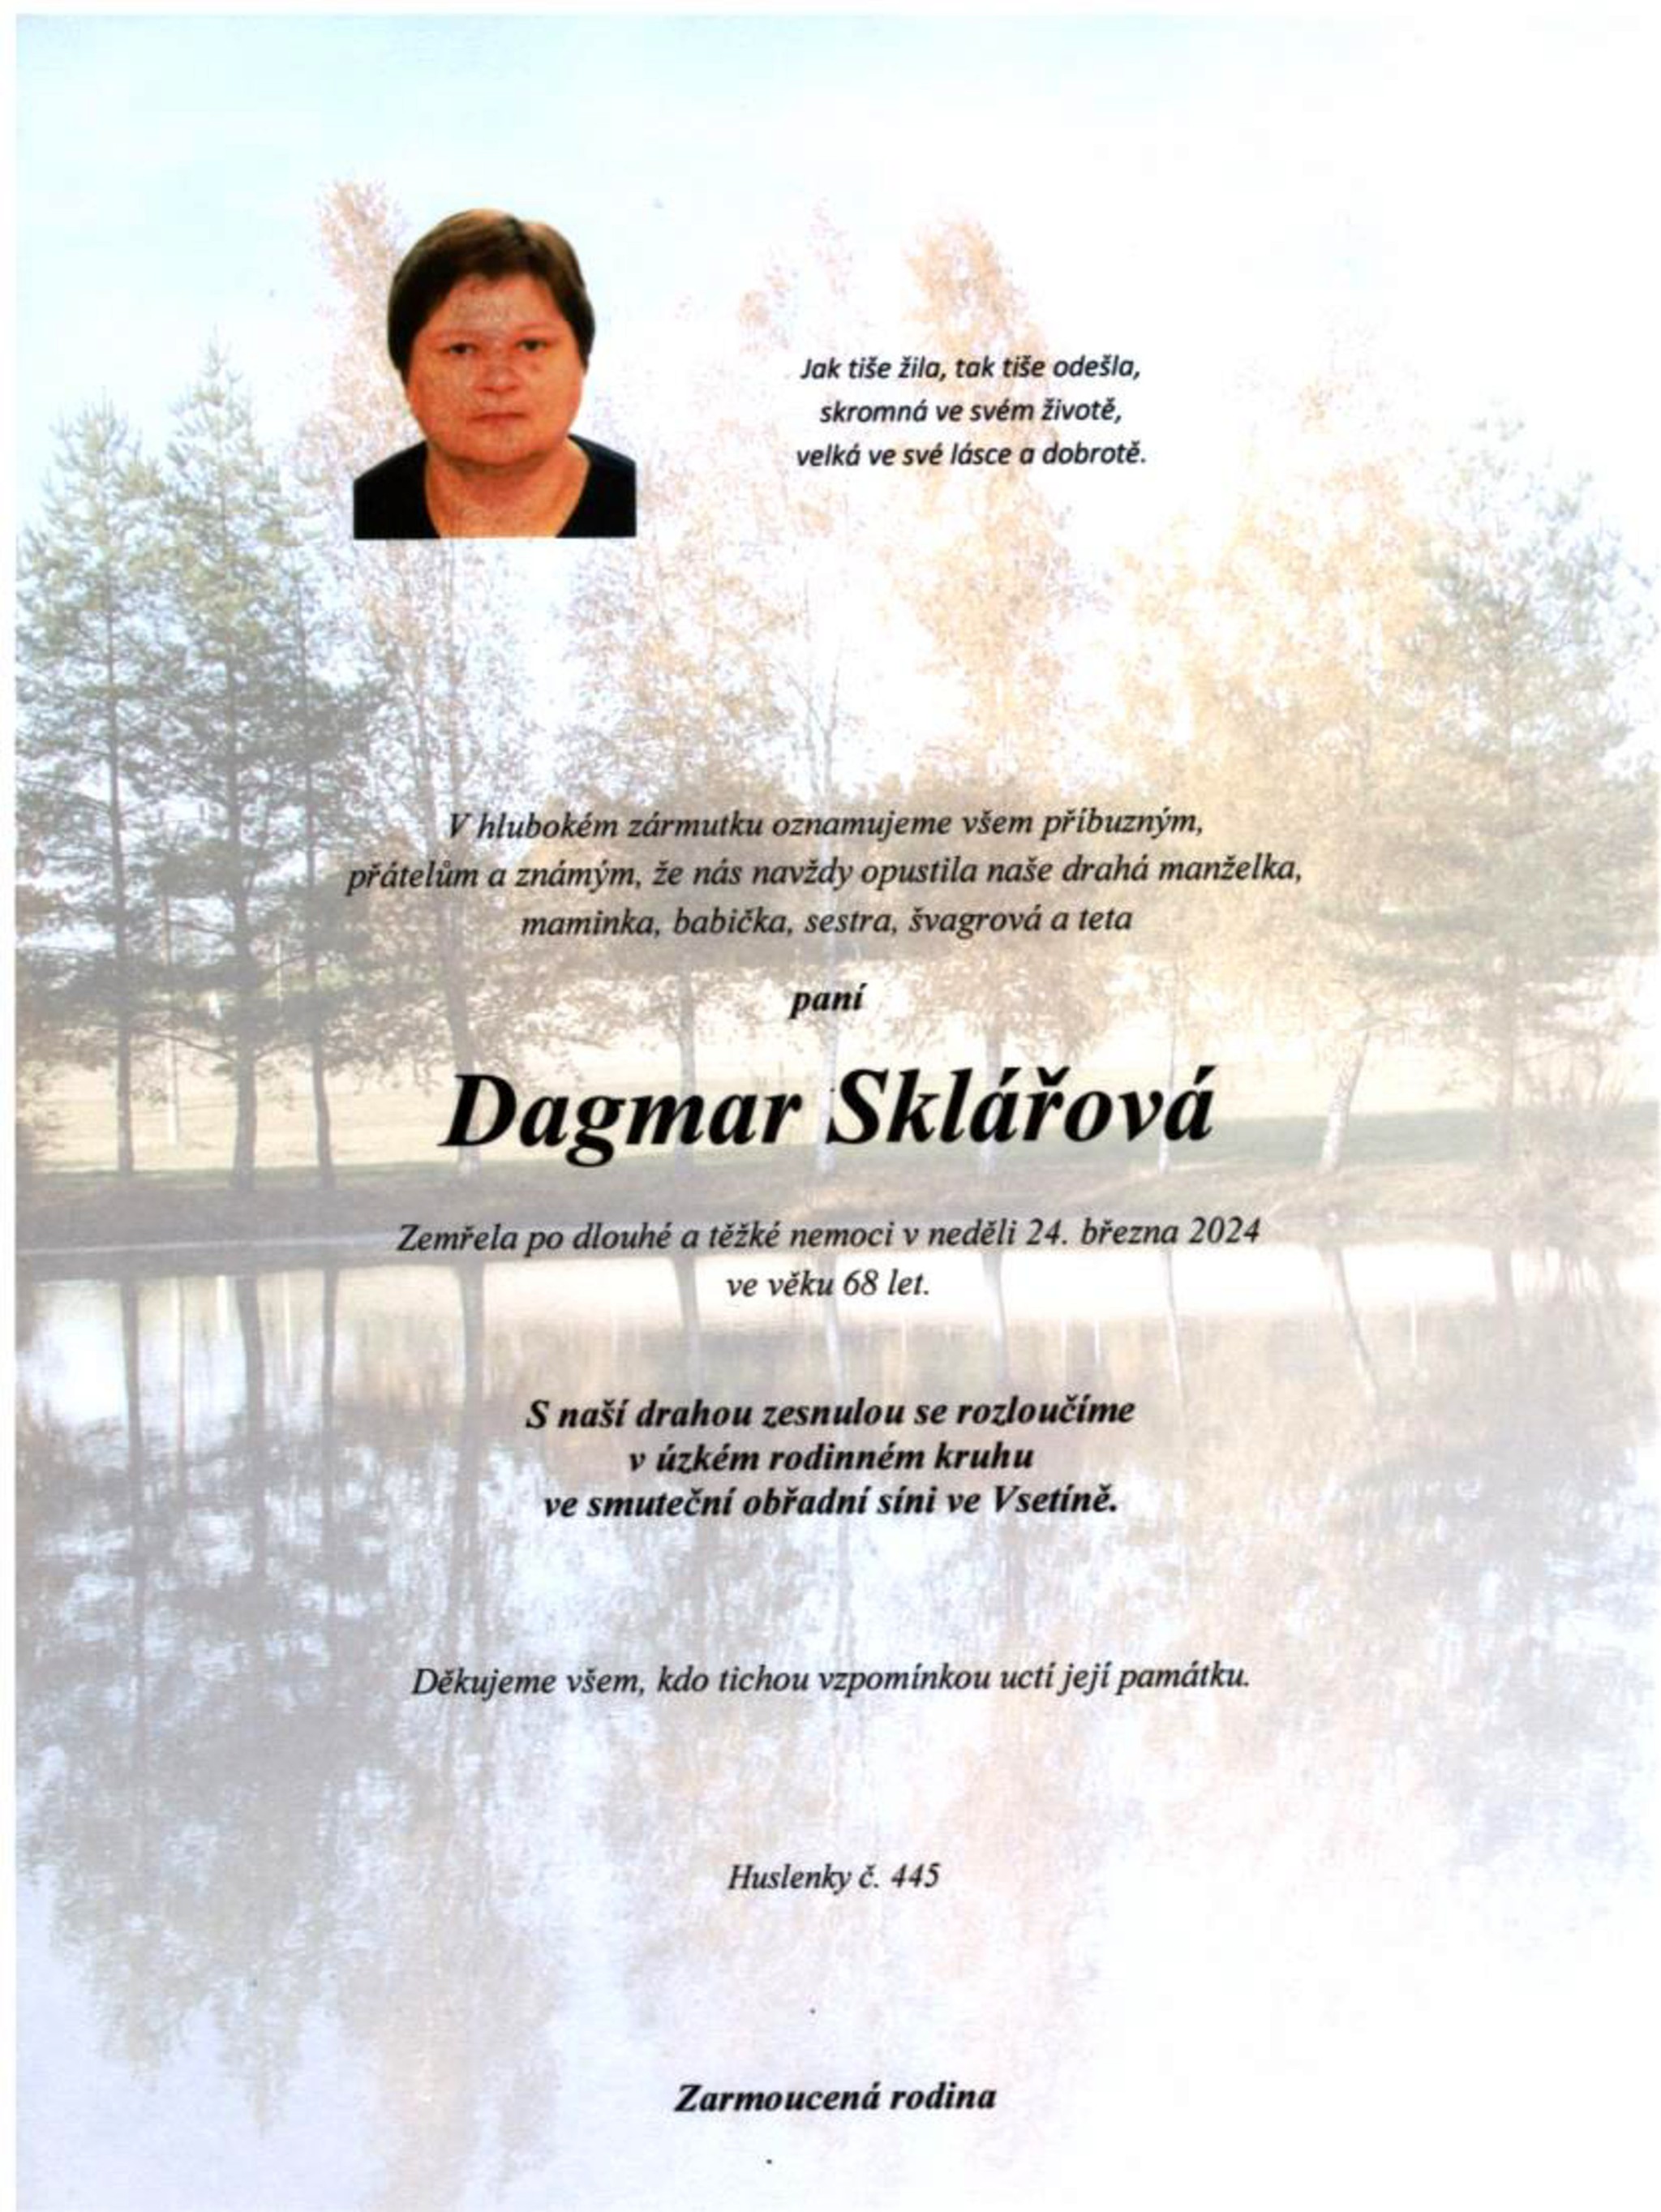 Dagmar Sklářová